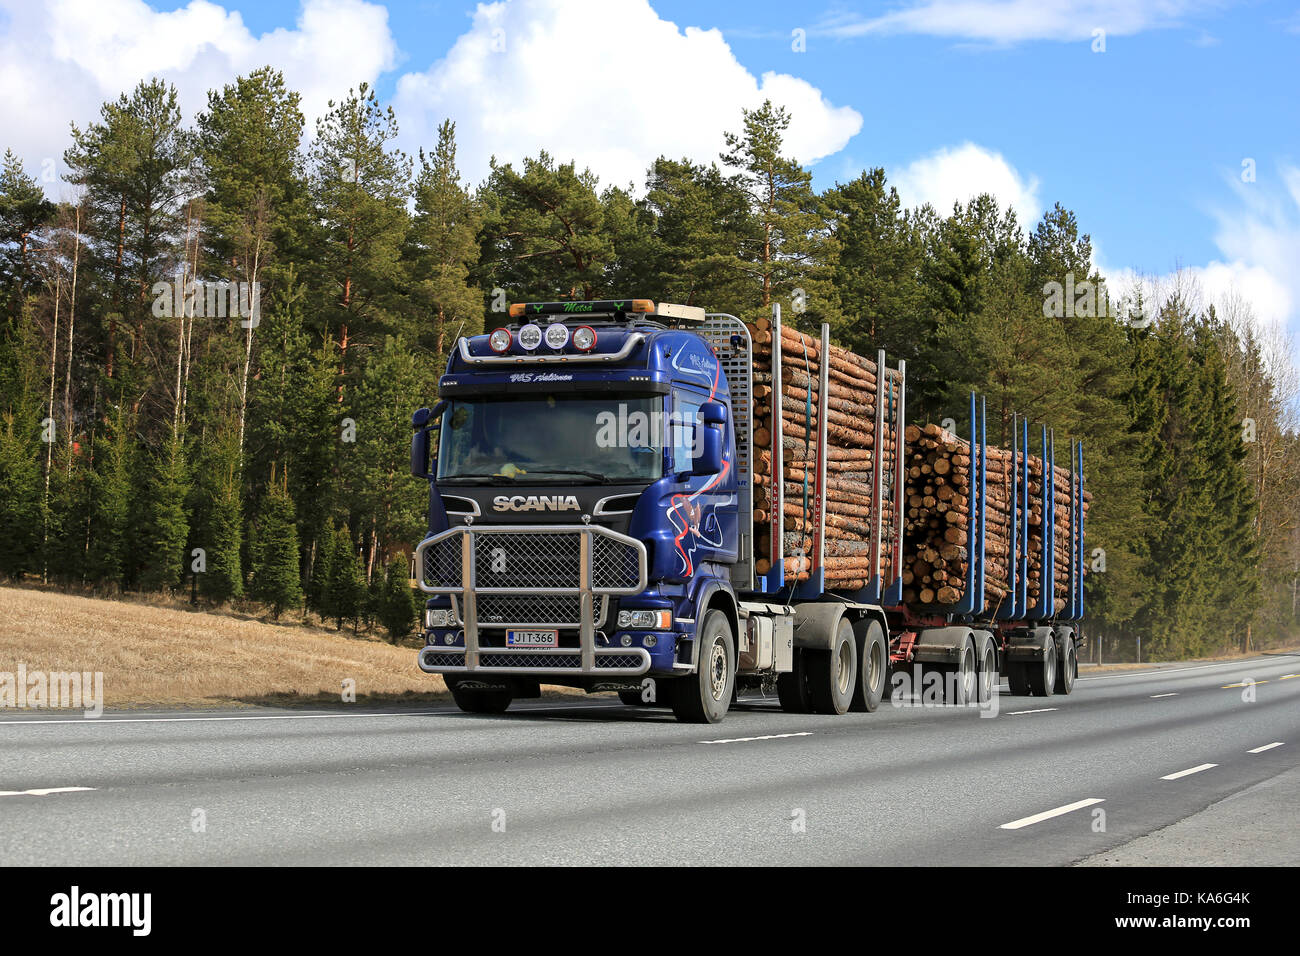 Jokioinen, Finnland - 23 April, 2017: blauer Scania logging Truck von aaltonen Transporte Schnittholz entlang der Autobahn an einem schönen Frühlingstag. Stockfoto